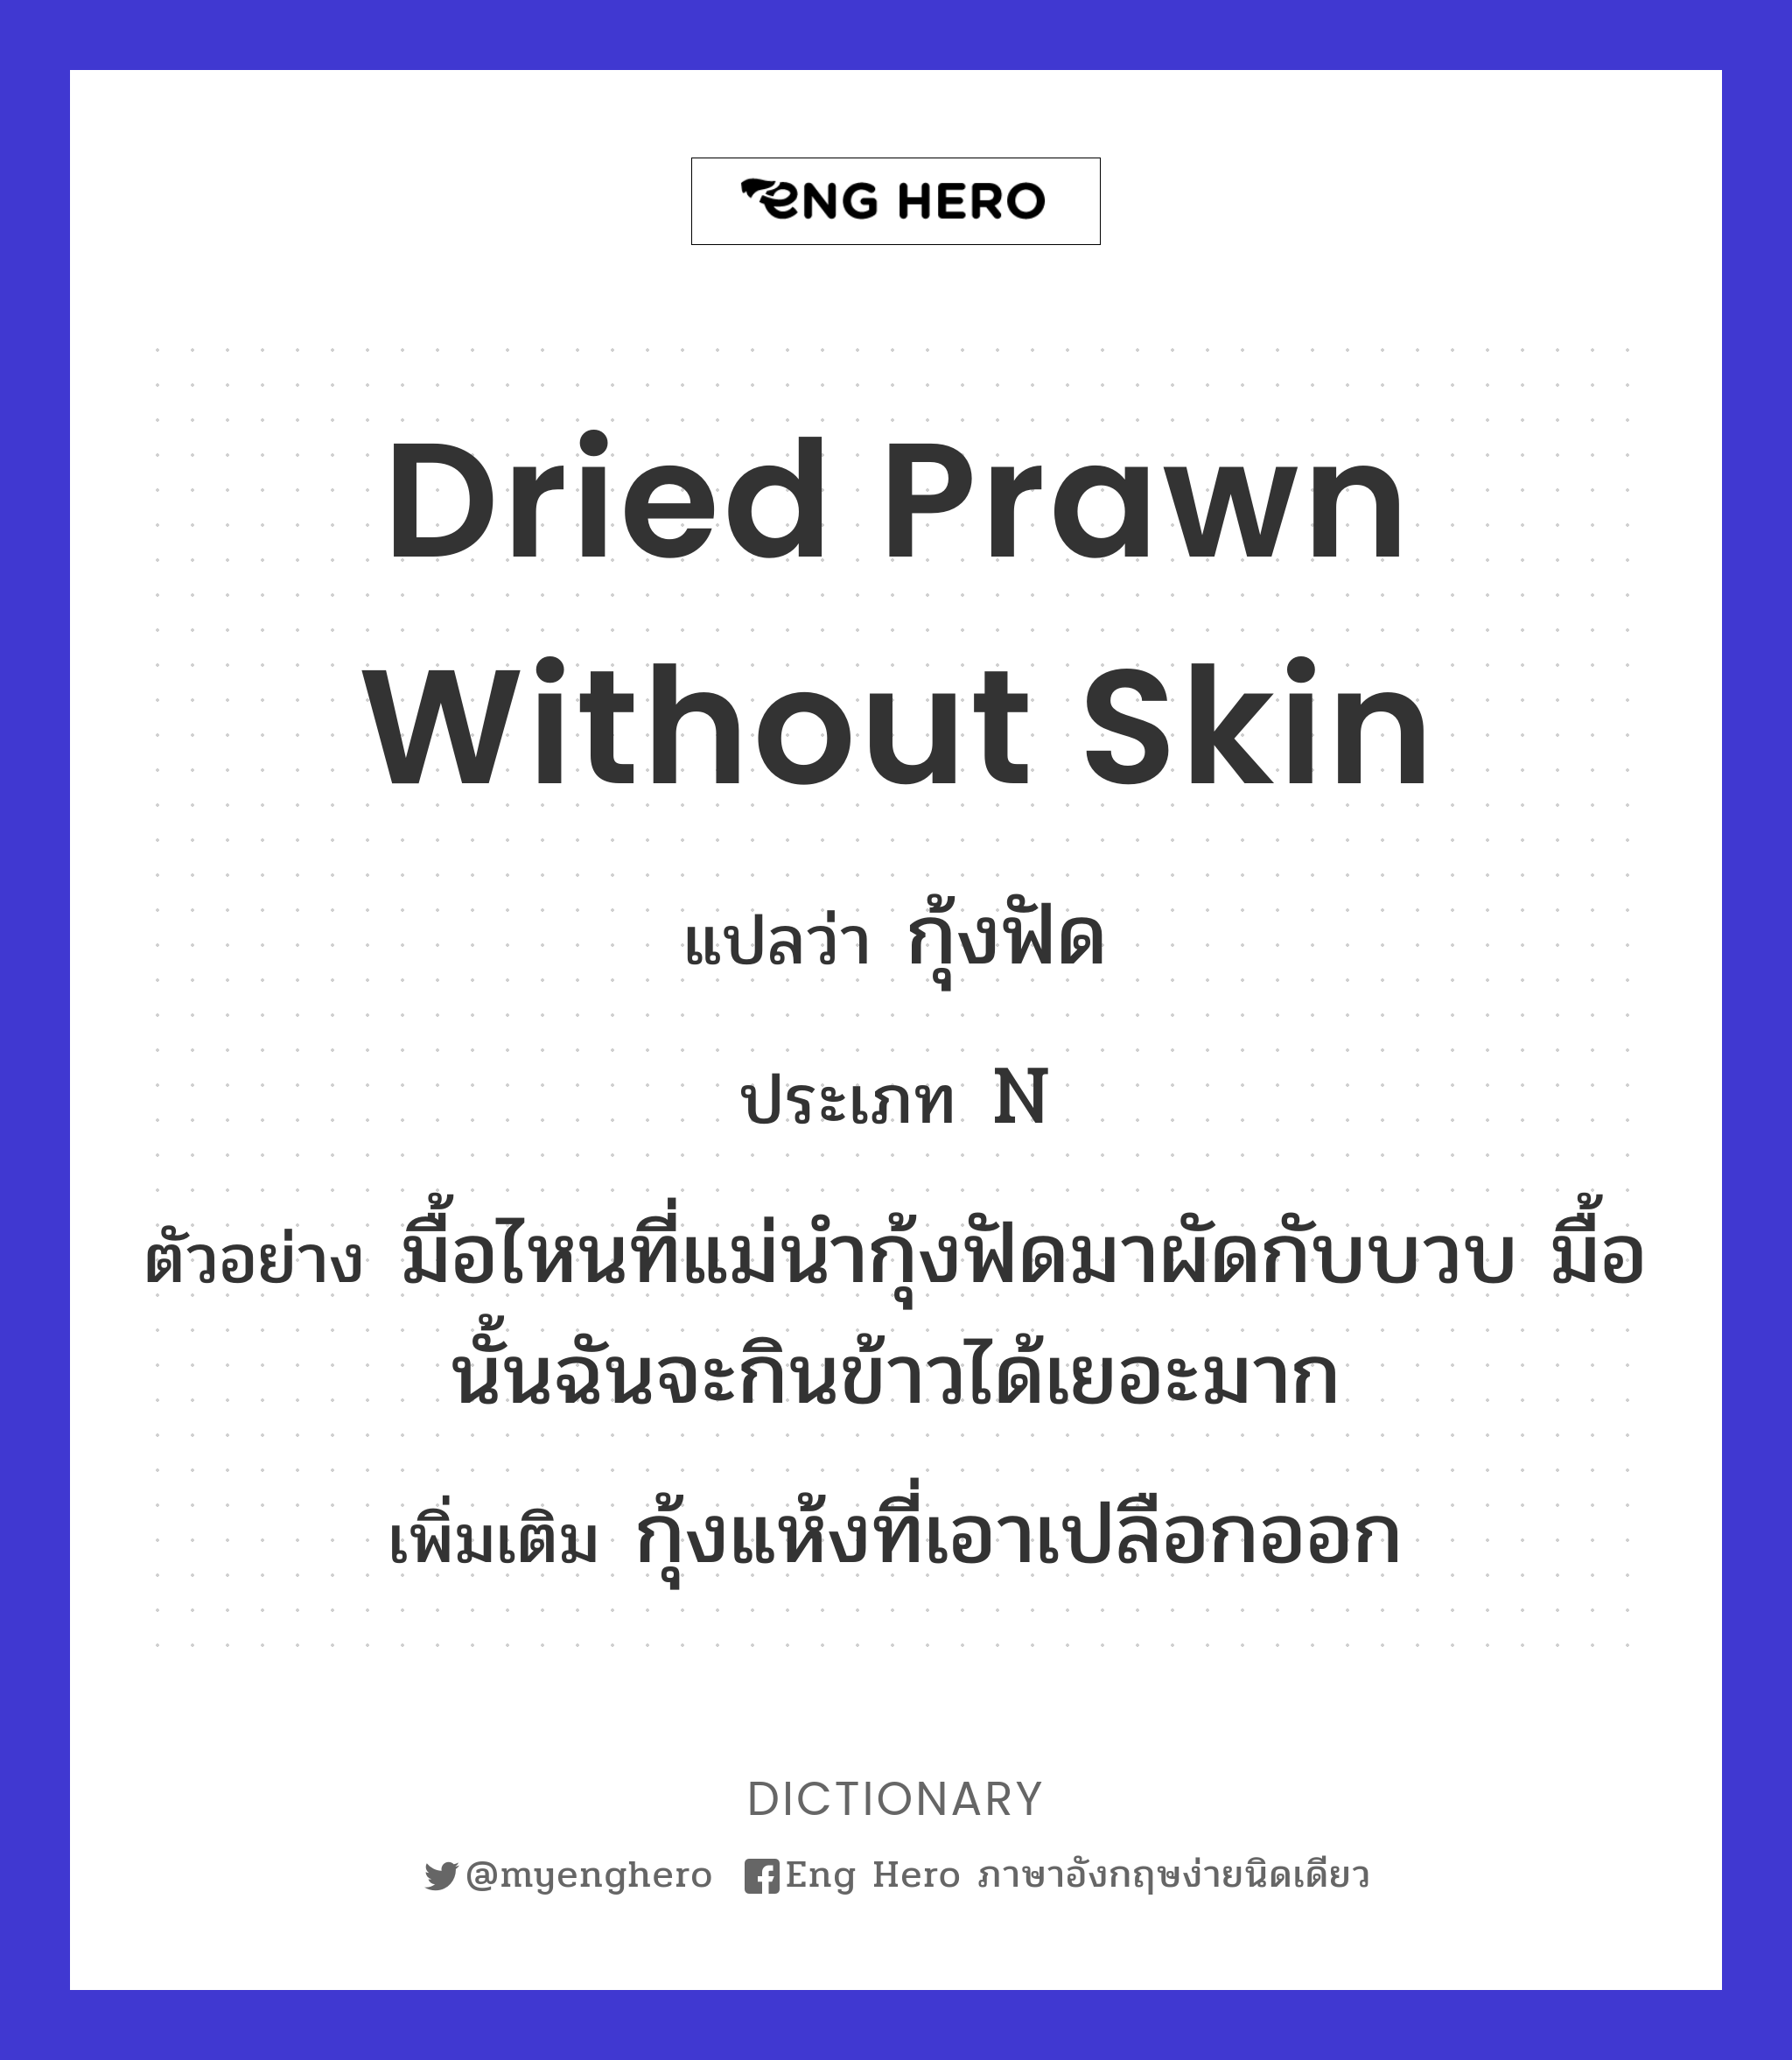 dried prawn without skin